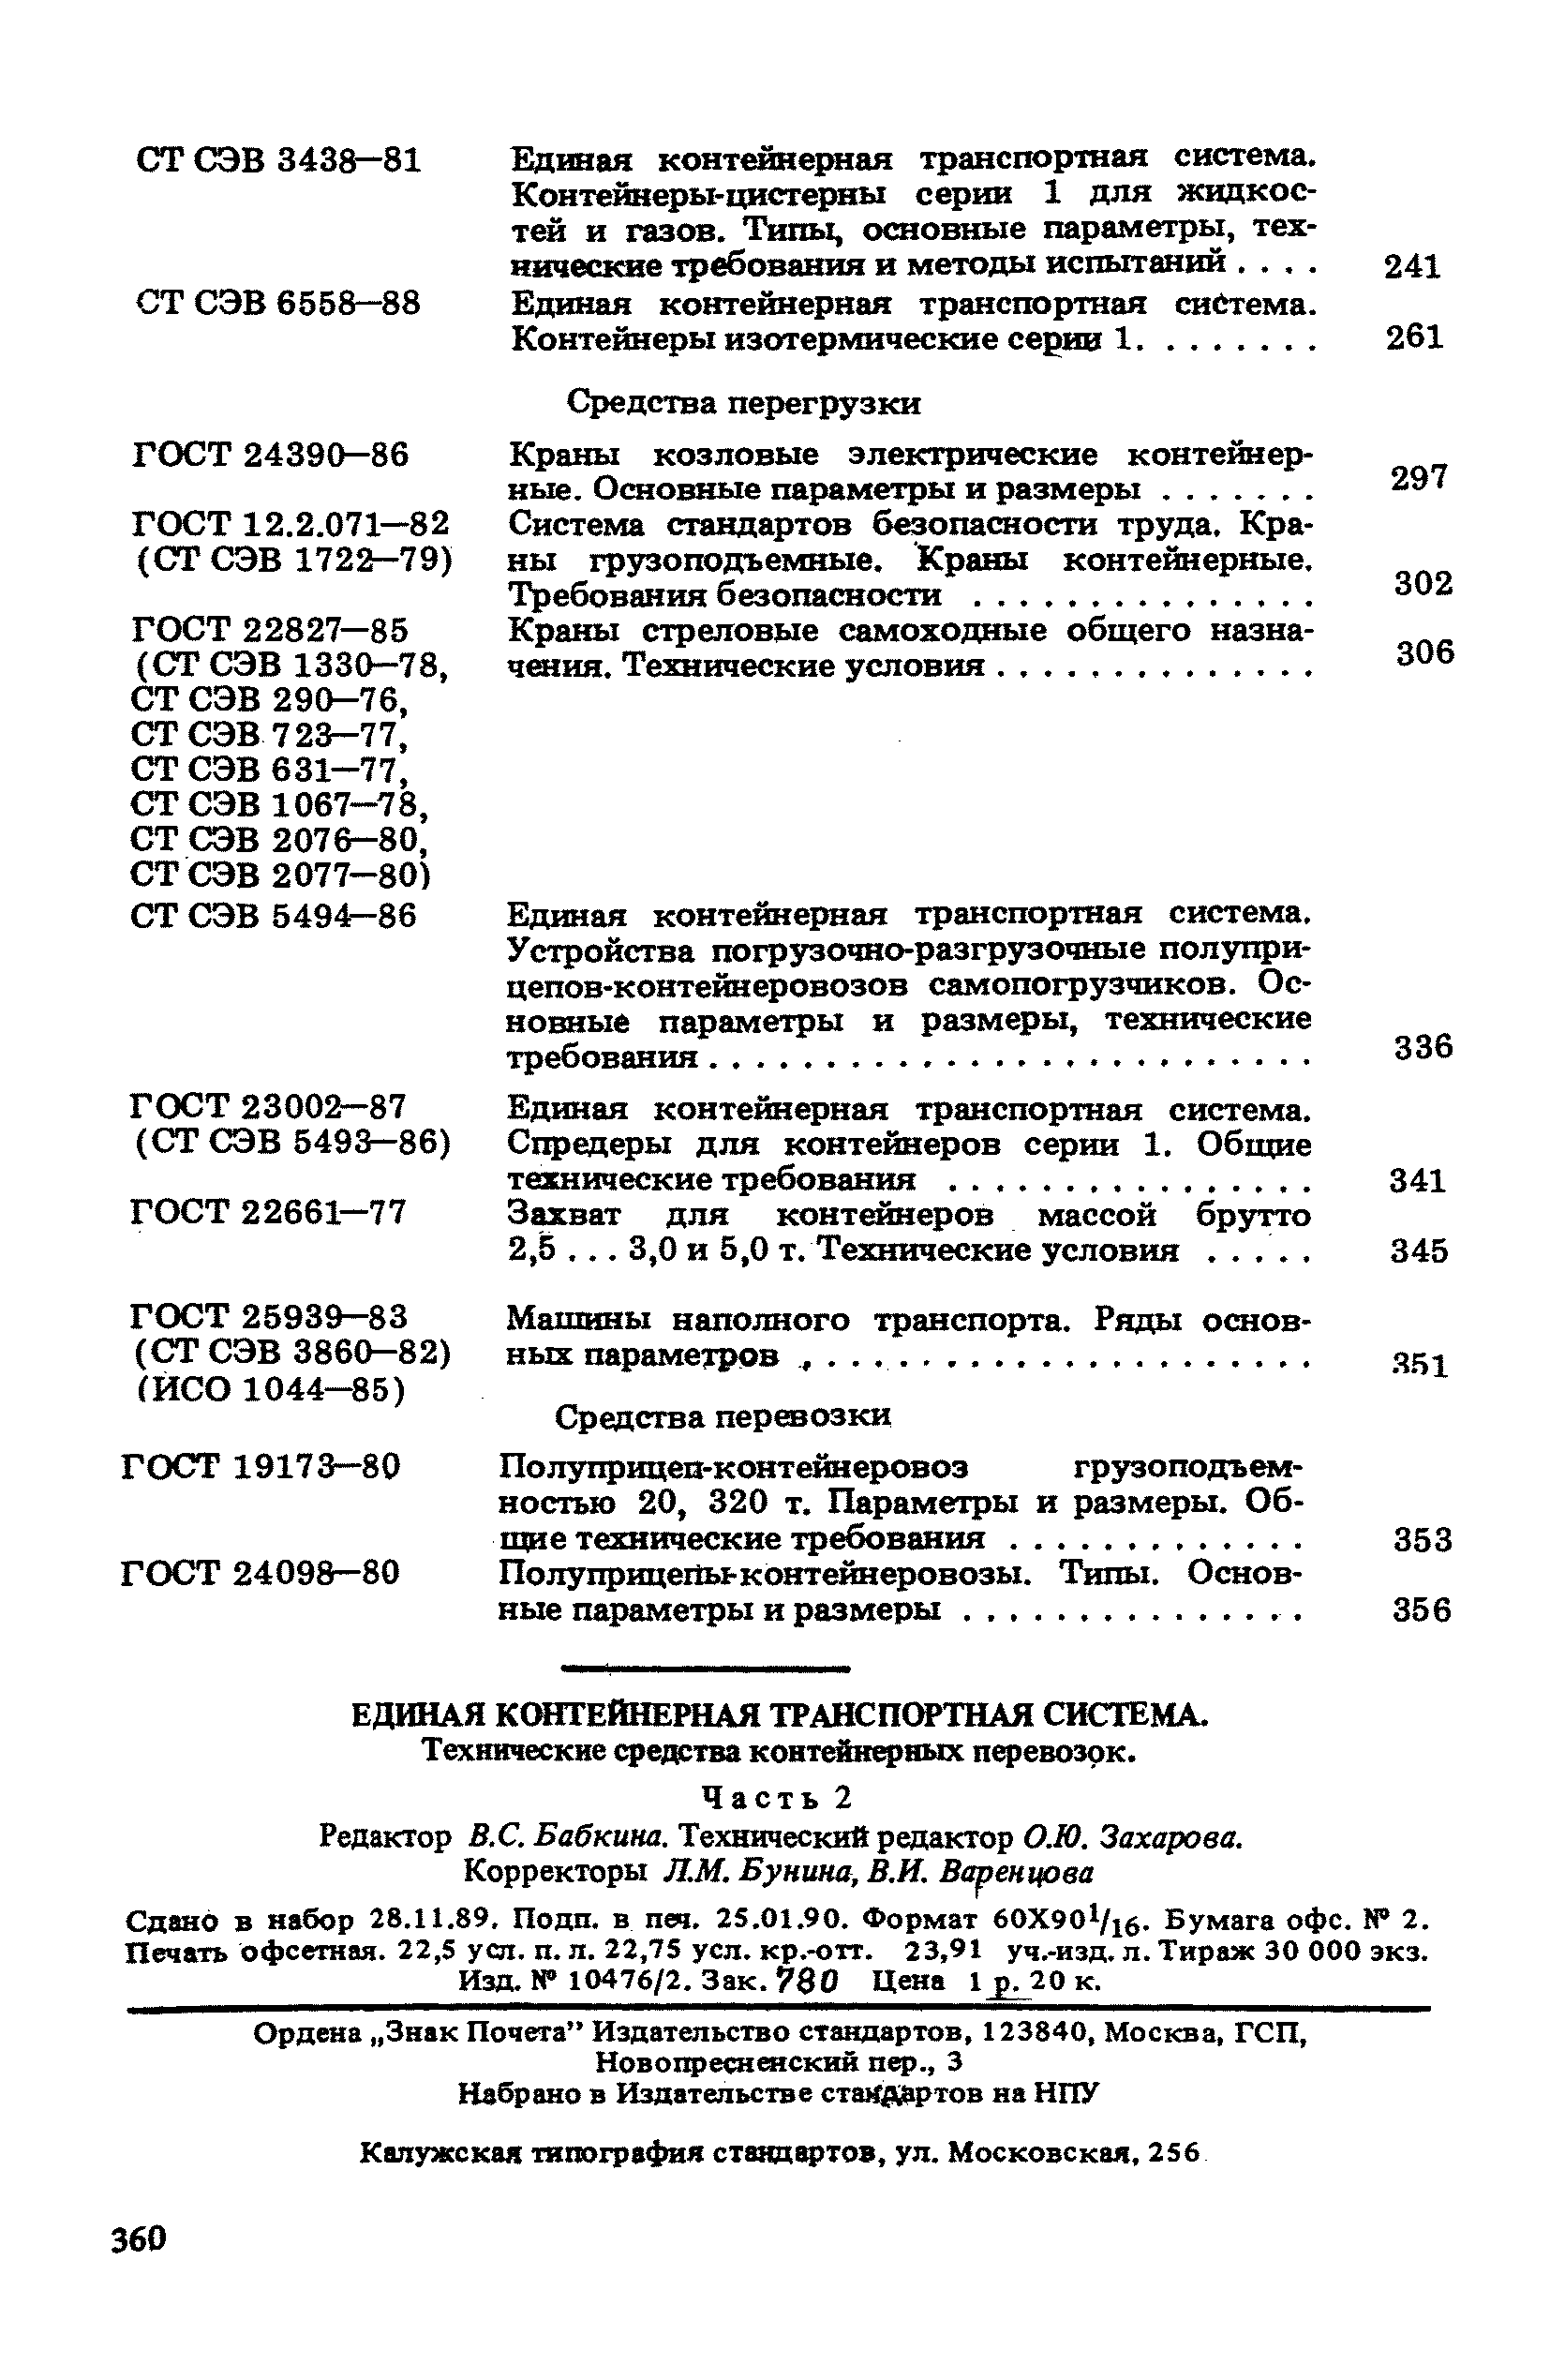 СТ СЭВ 5492-86